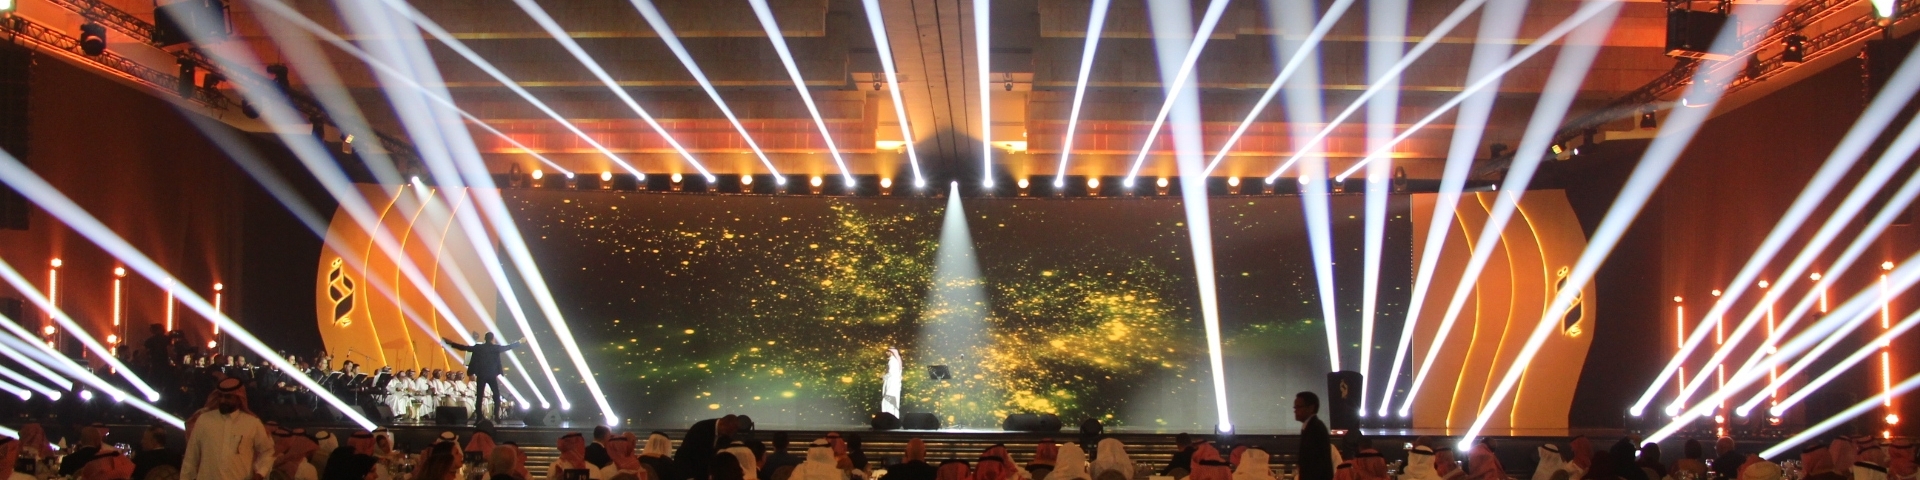 افتتاح الدورة 22 للمهرجان العربي للاذاعة والتلفزيون في الرياض بتكريم المبدعين العرب وحفل غنائي للفنان ماجد المهندس 